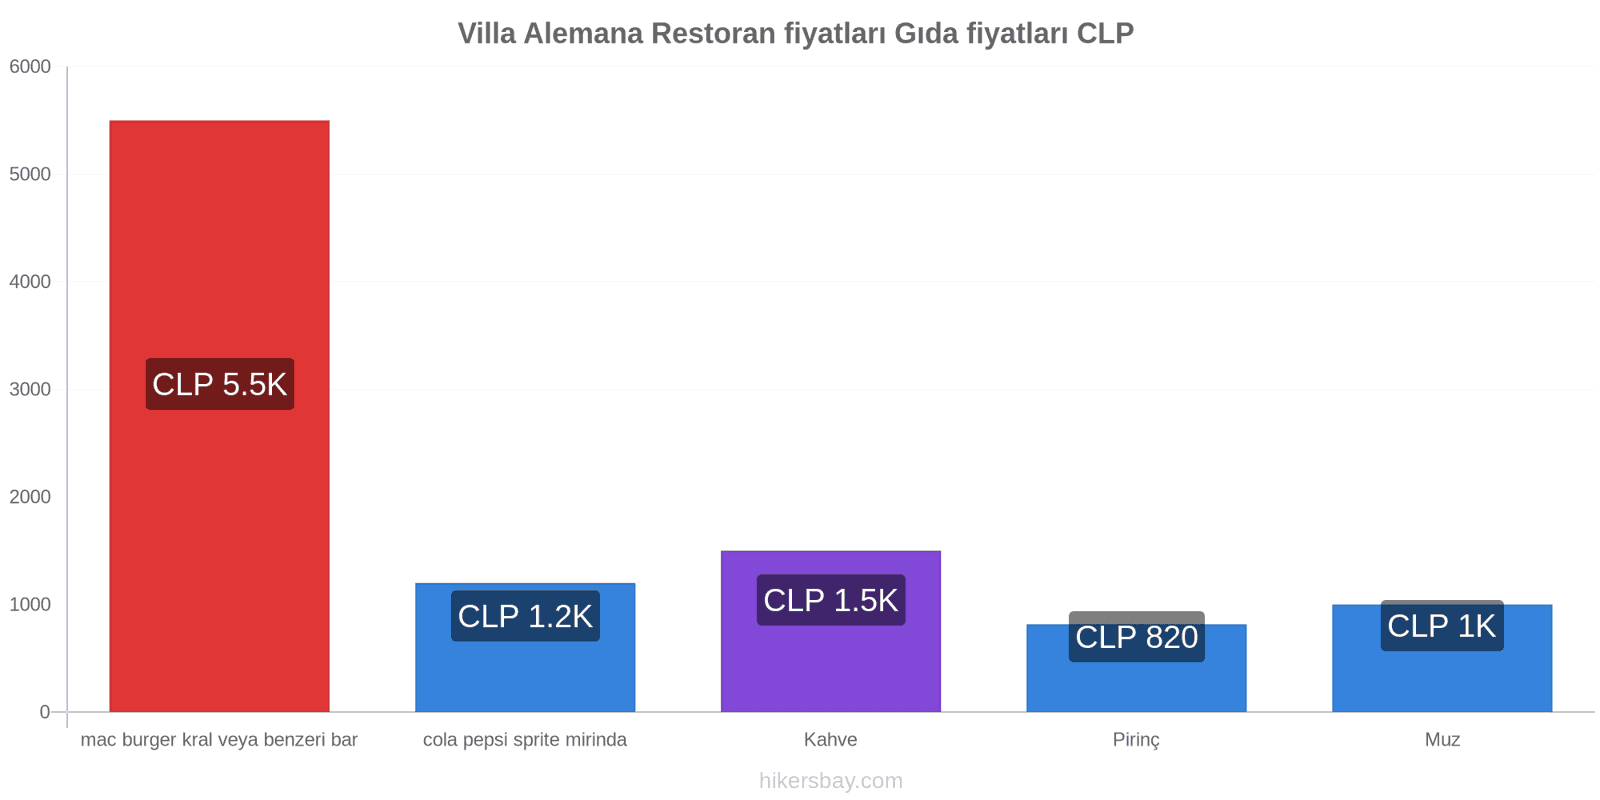 Villa Alemana fiyat değişiklikleri hikersbay.com